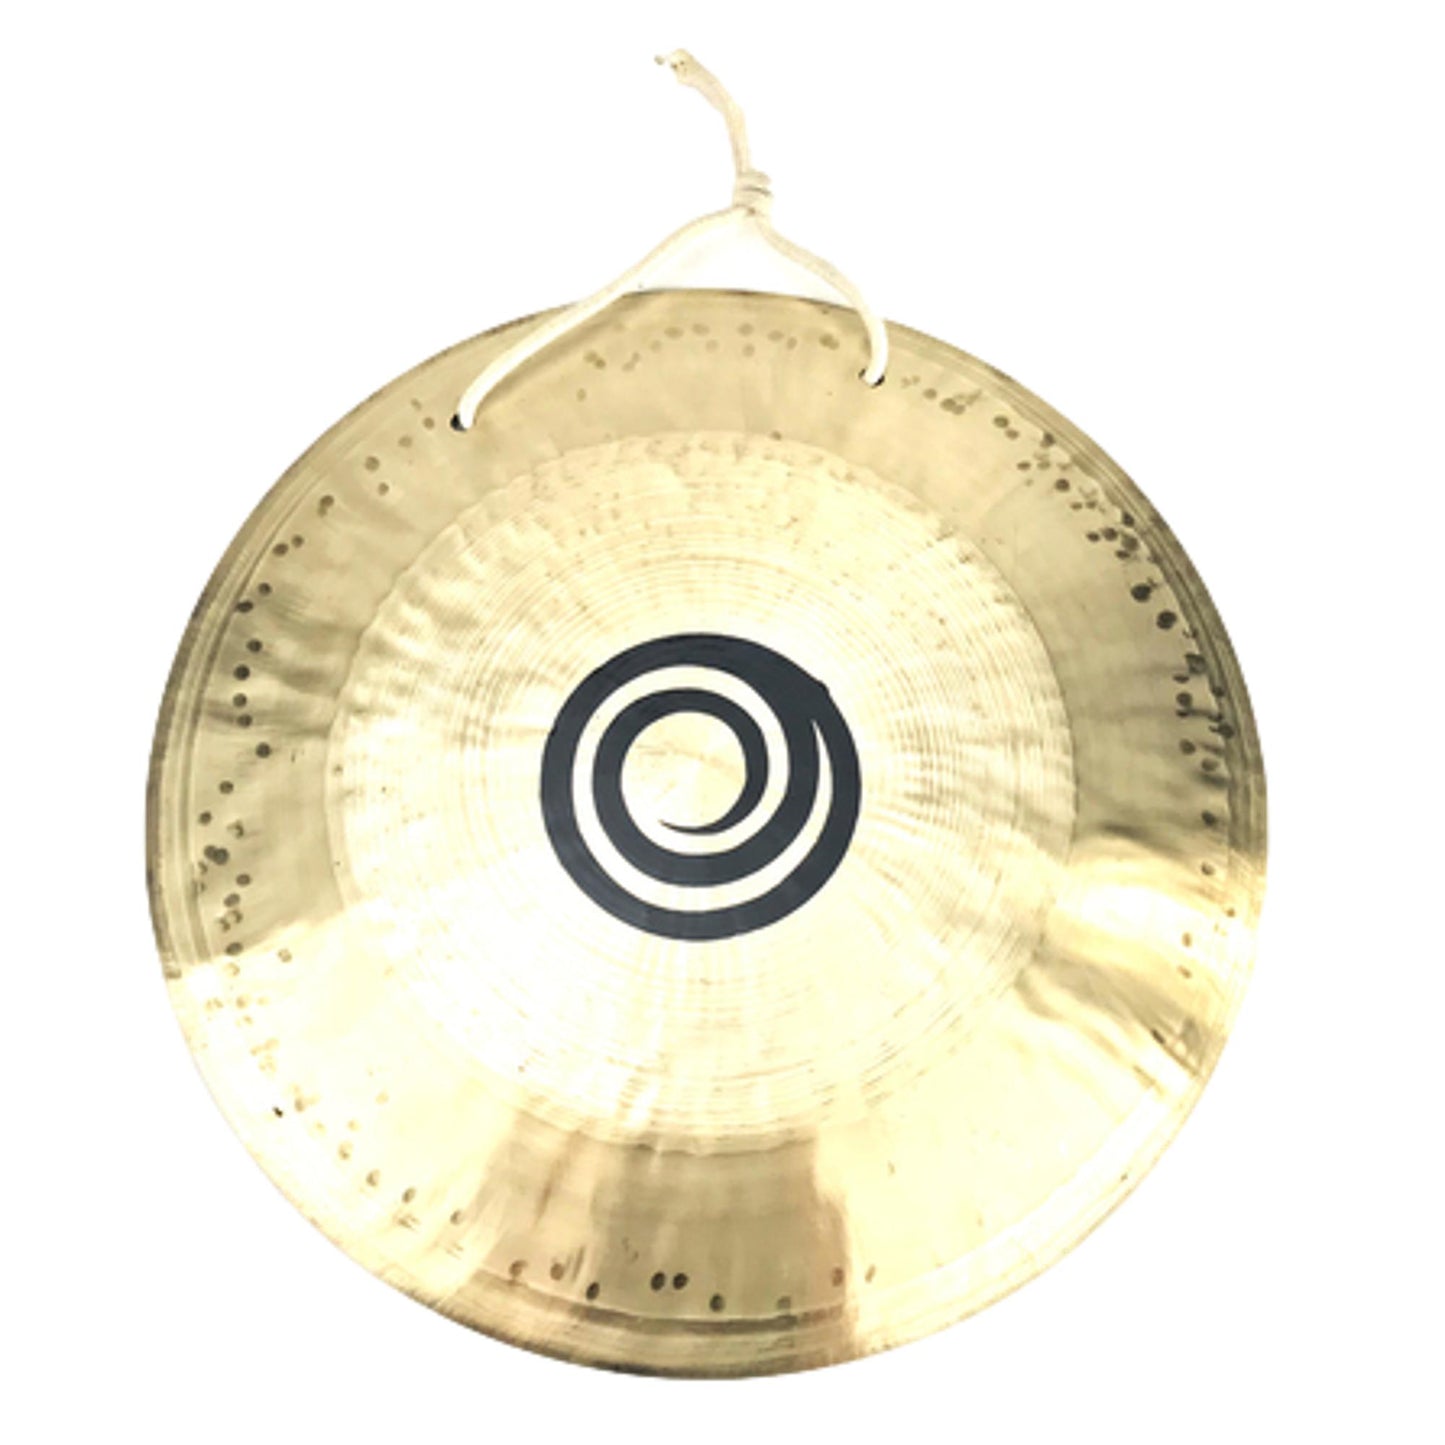 Zen Therapeutic Wind Gong, 14" Diameter